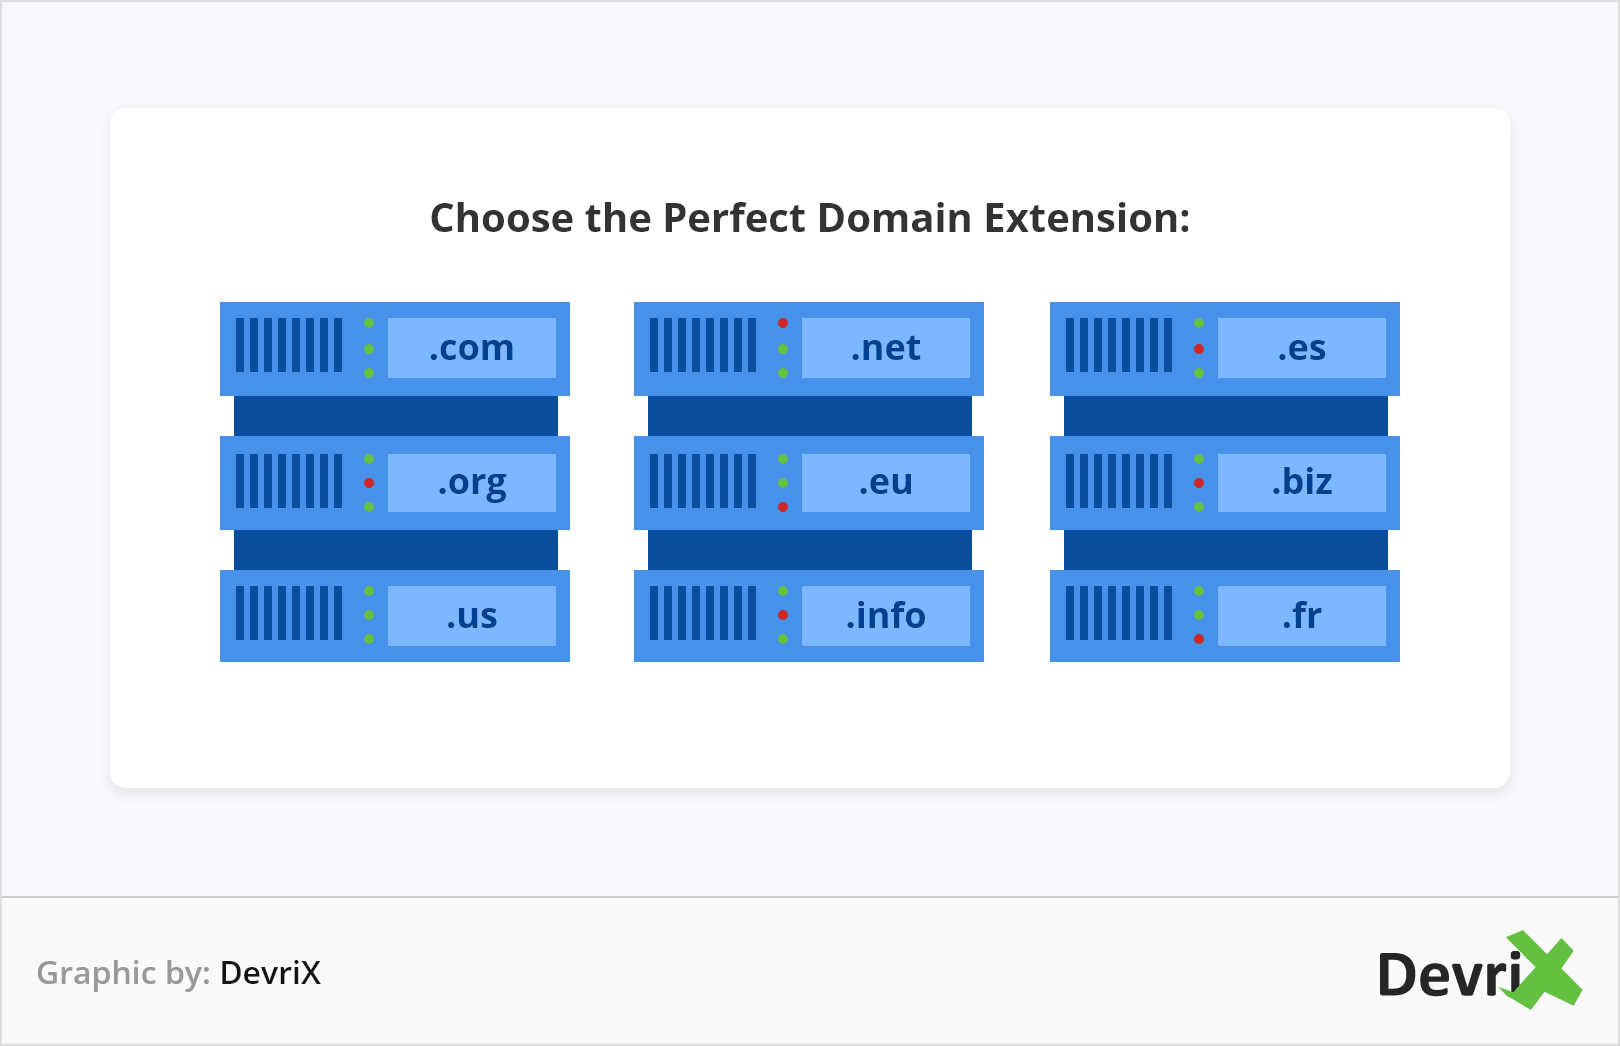 Scegli l'estensione di dominio perfetta